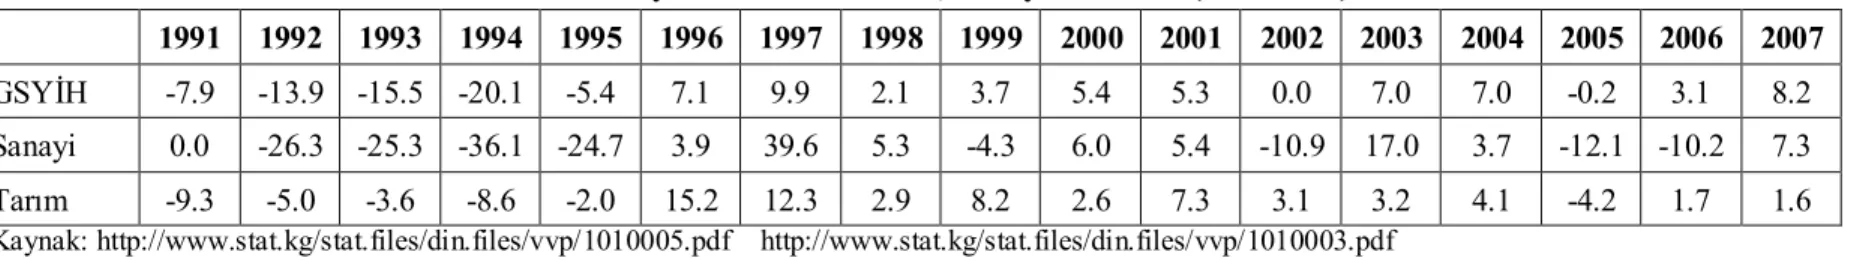 Tablo 1.3: Büyüme Oranı: GSYİH, Sanayi ve Tarım (1991-2007)